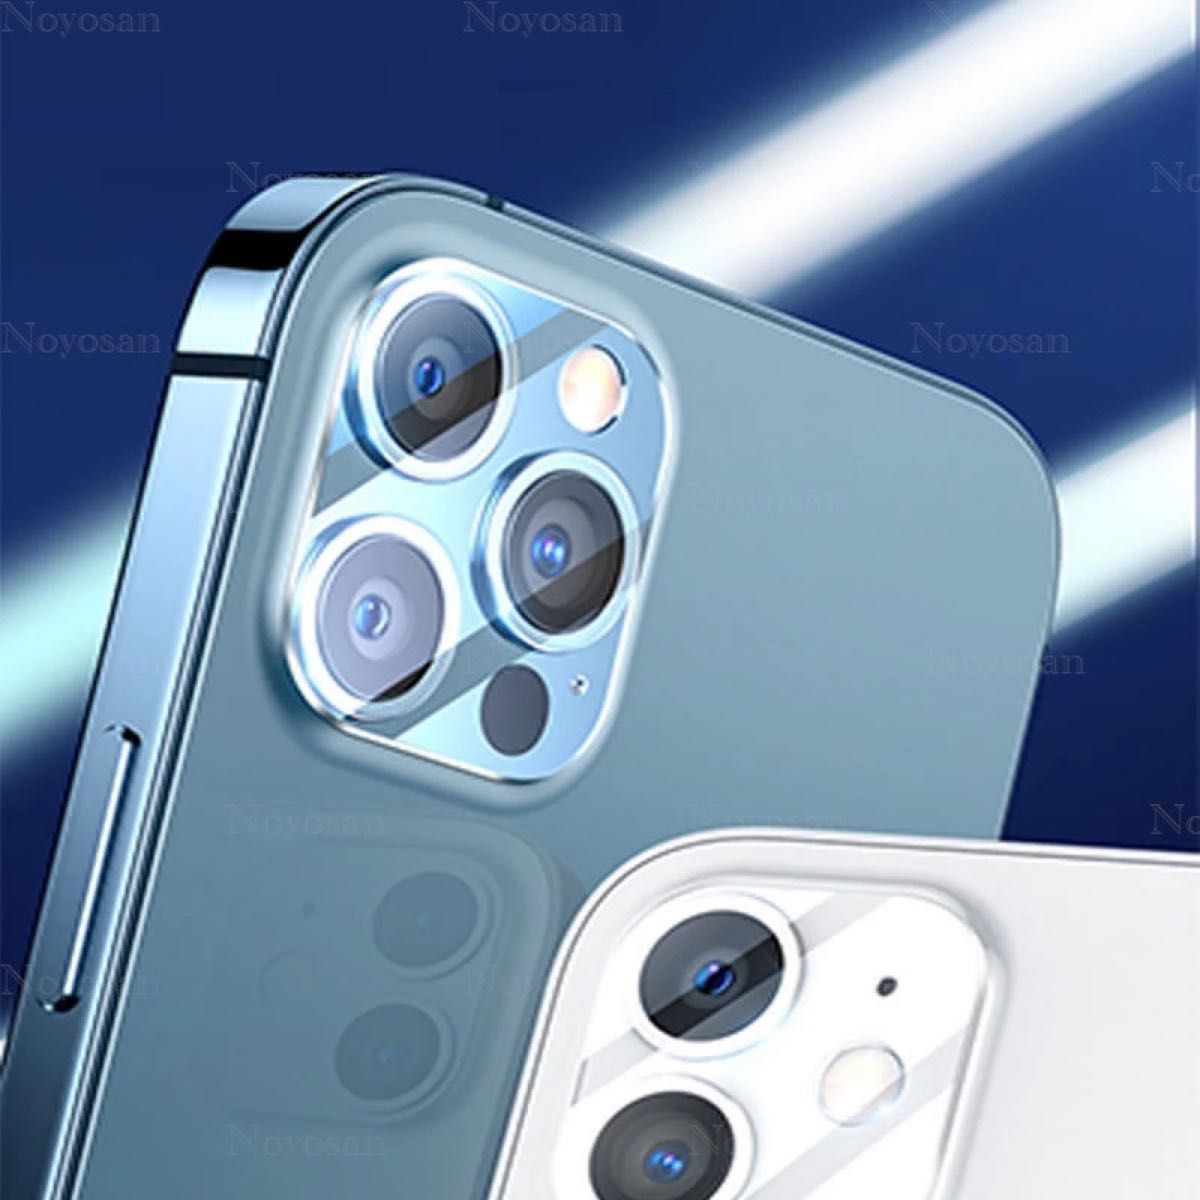 iPhone12Pro対応 10D採用全面保護強化ガラスフィルム&背面カメラレンズ用ガラスフィルムセット